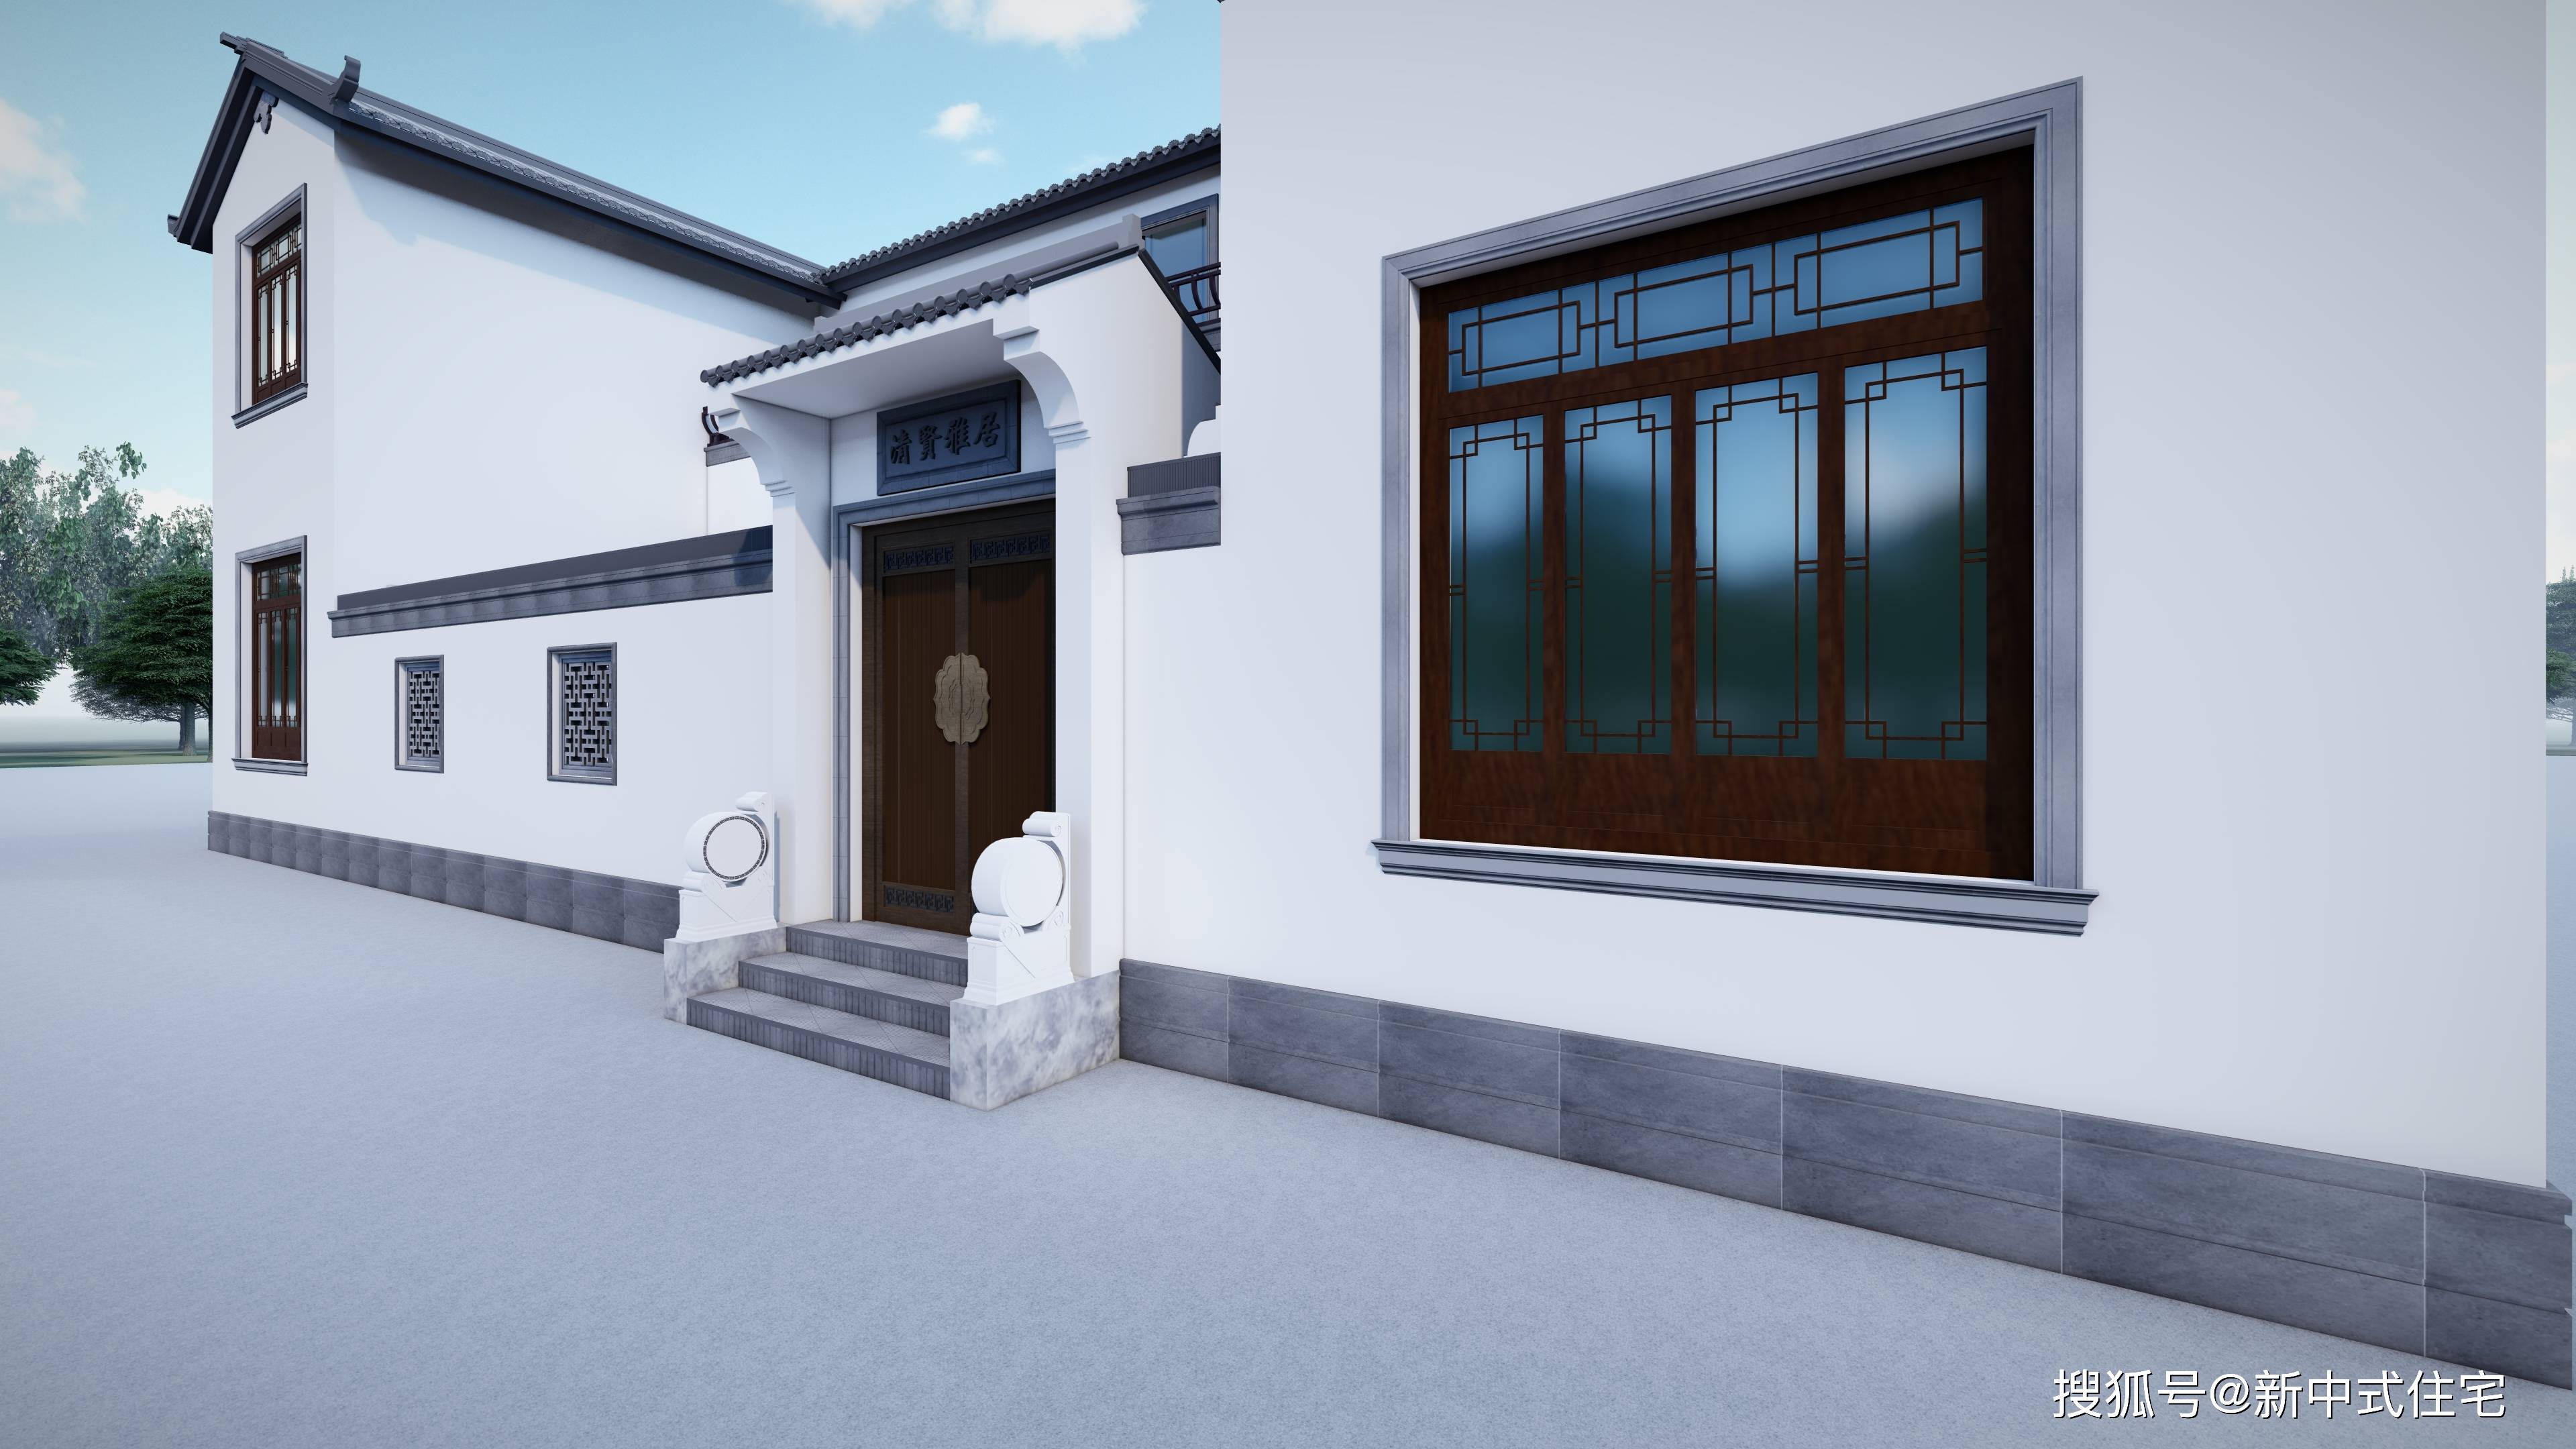 庭院围墙设计效果图:唐语景观砖雕中式材料